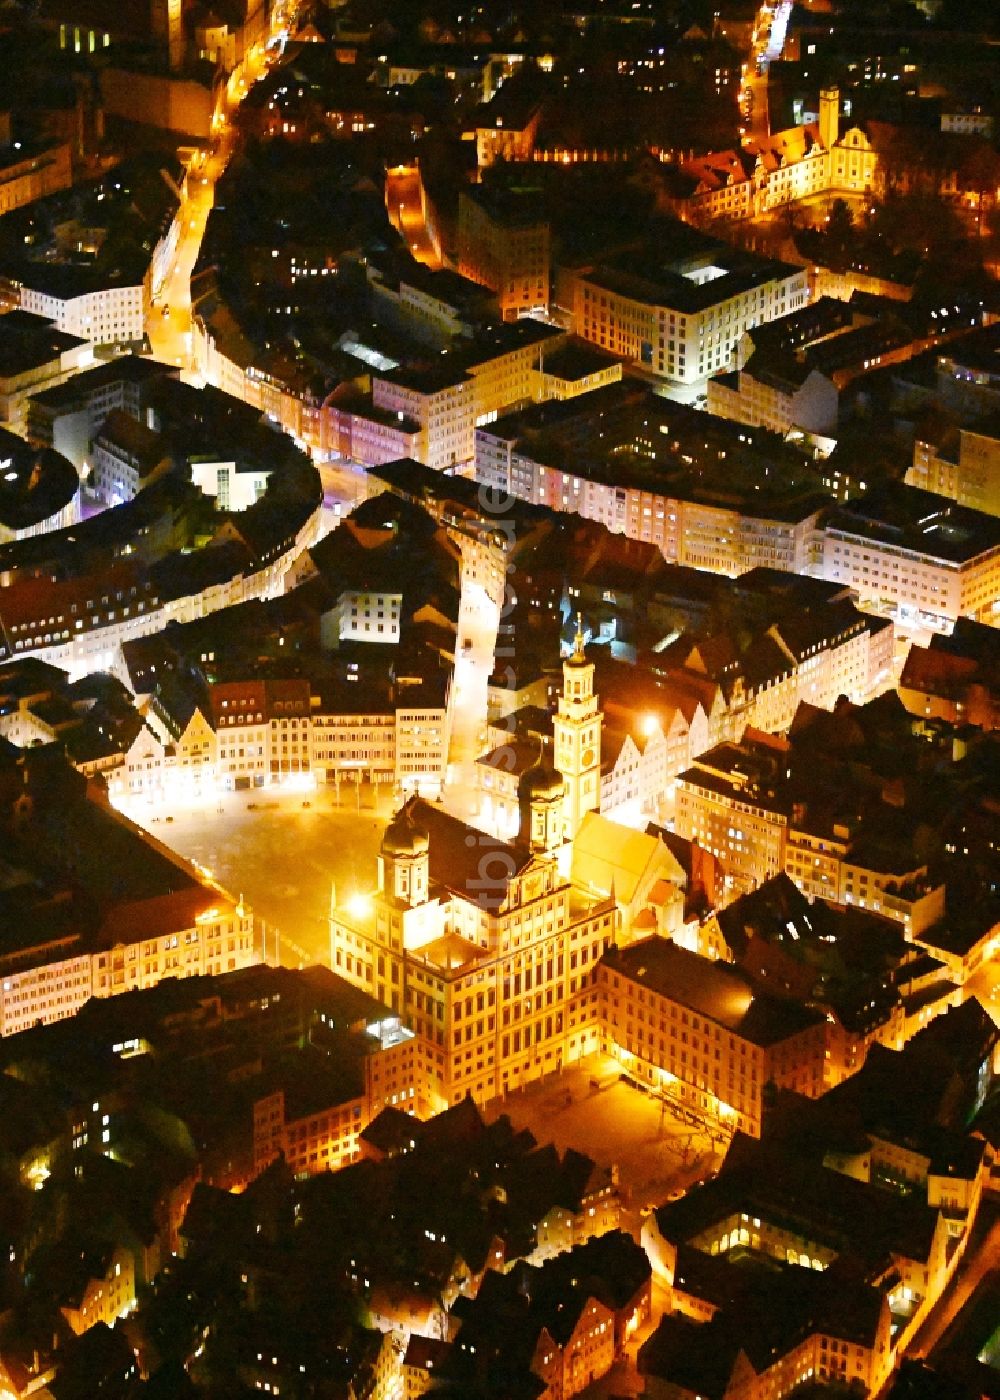 Nachtluftbild Augsburg - Nachtluftbild Gebäude der Stadtverwaltung - Rathaus mit Kath. Kirche St. Peter am Perlach in Augsburg im Bundesland Bayern, Deutschland